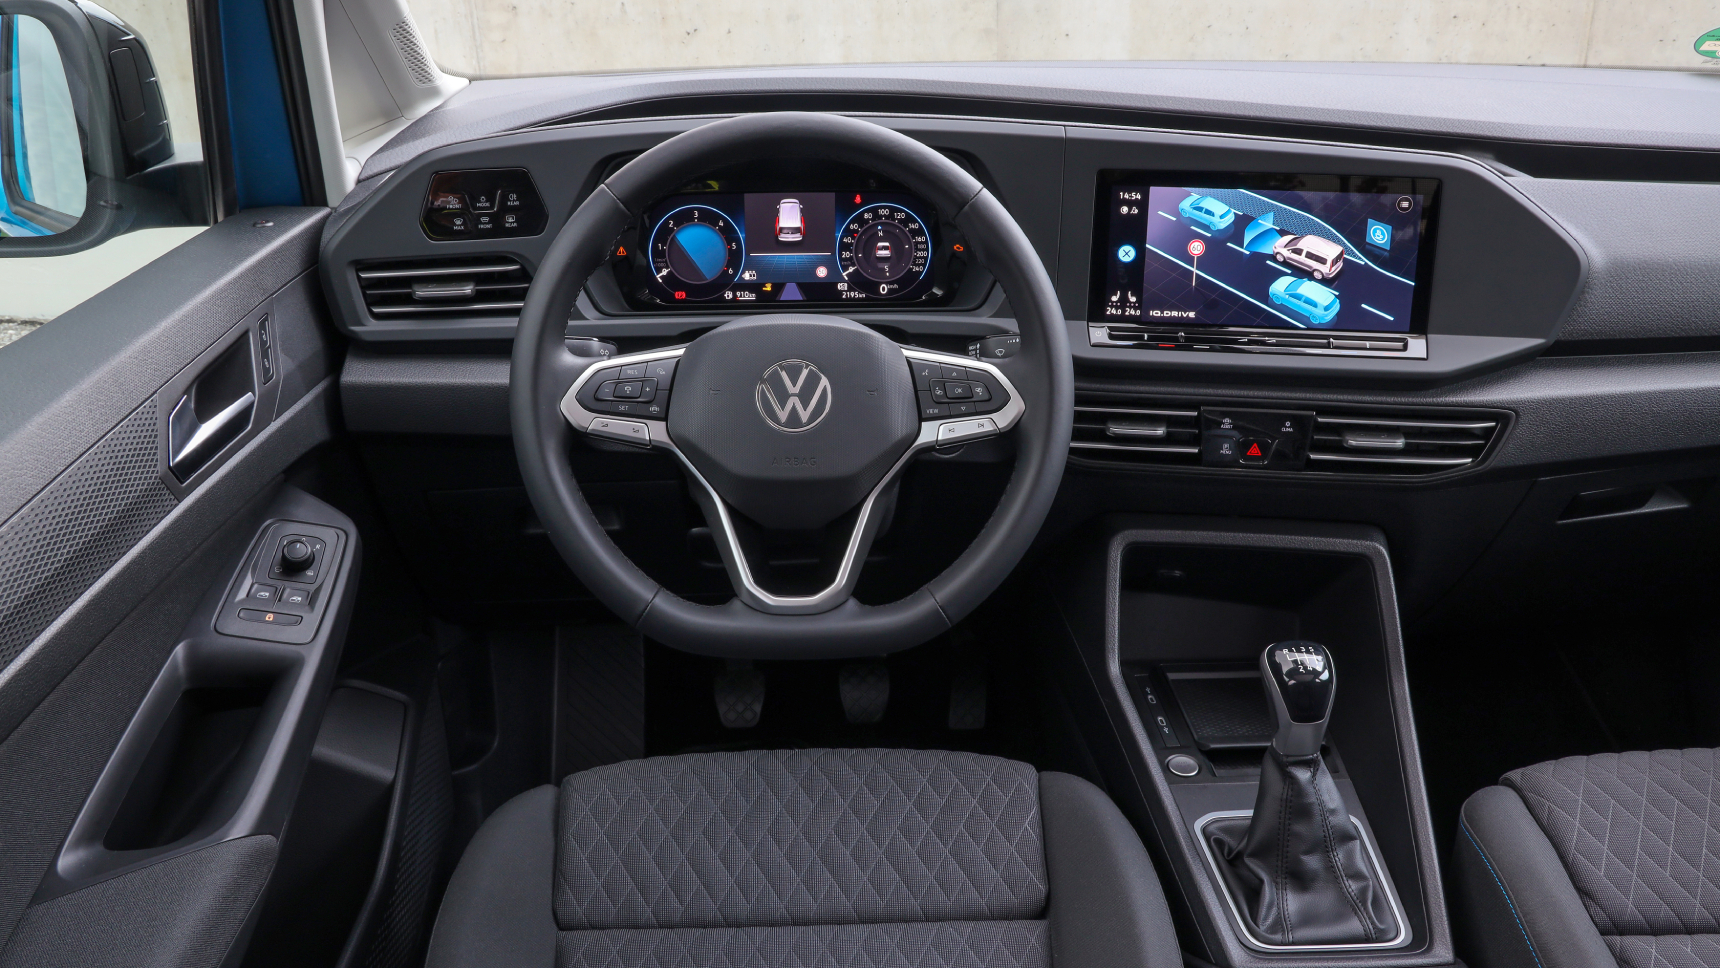 Объявлены российские цены на новый Volkswagen Caddy